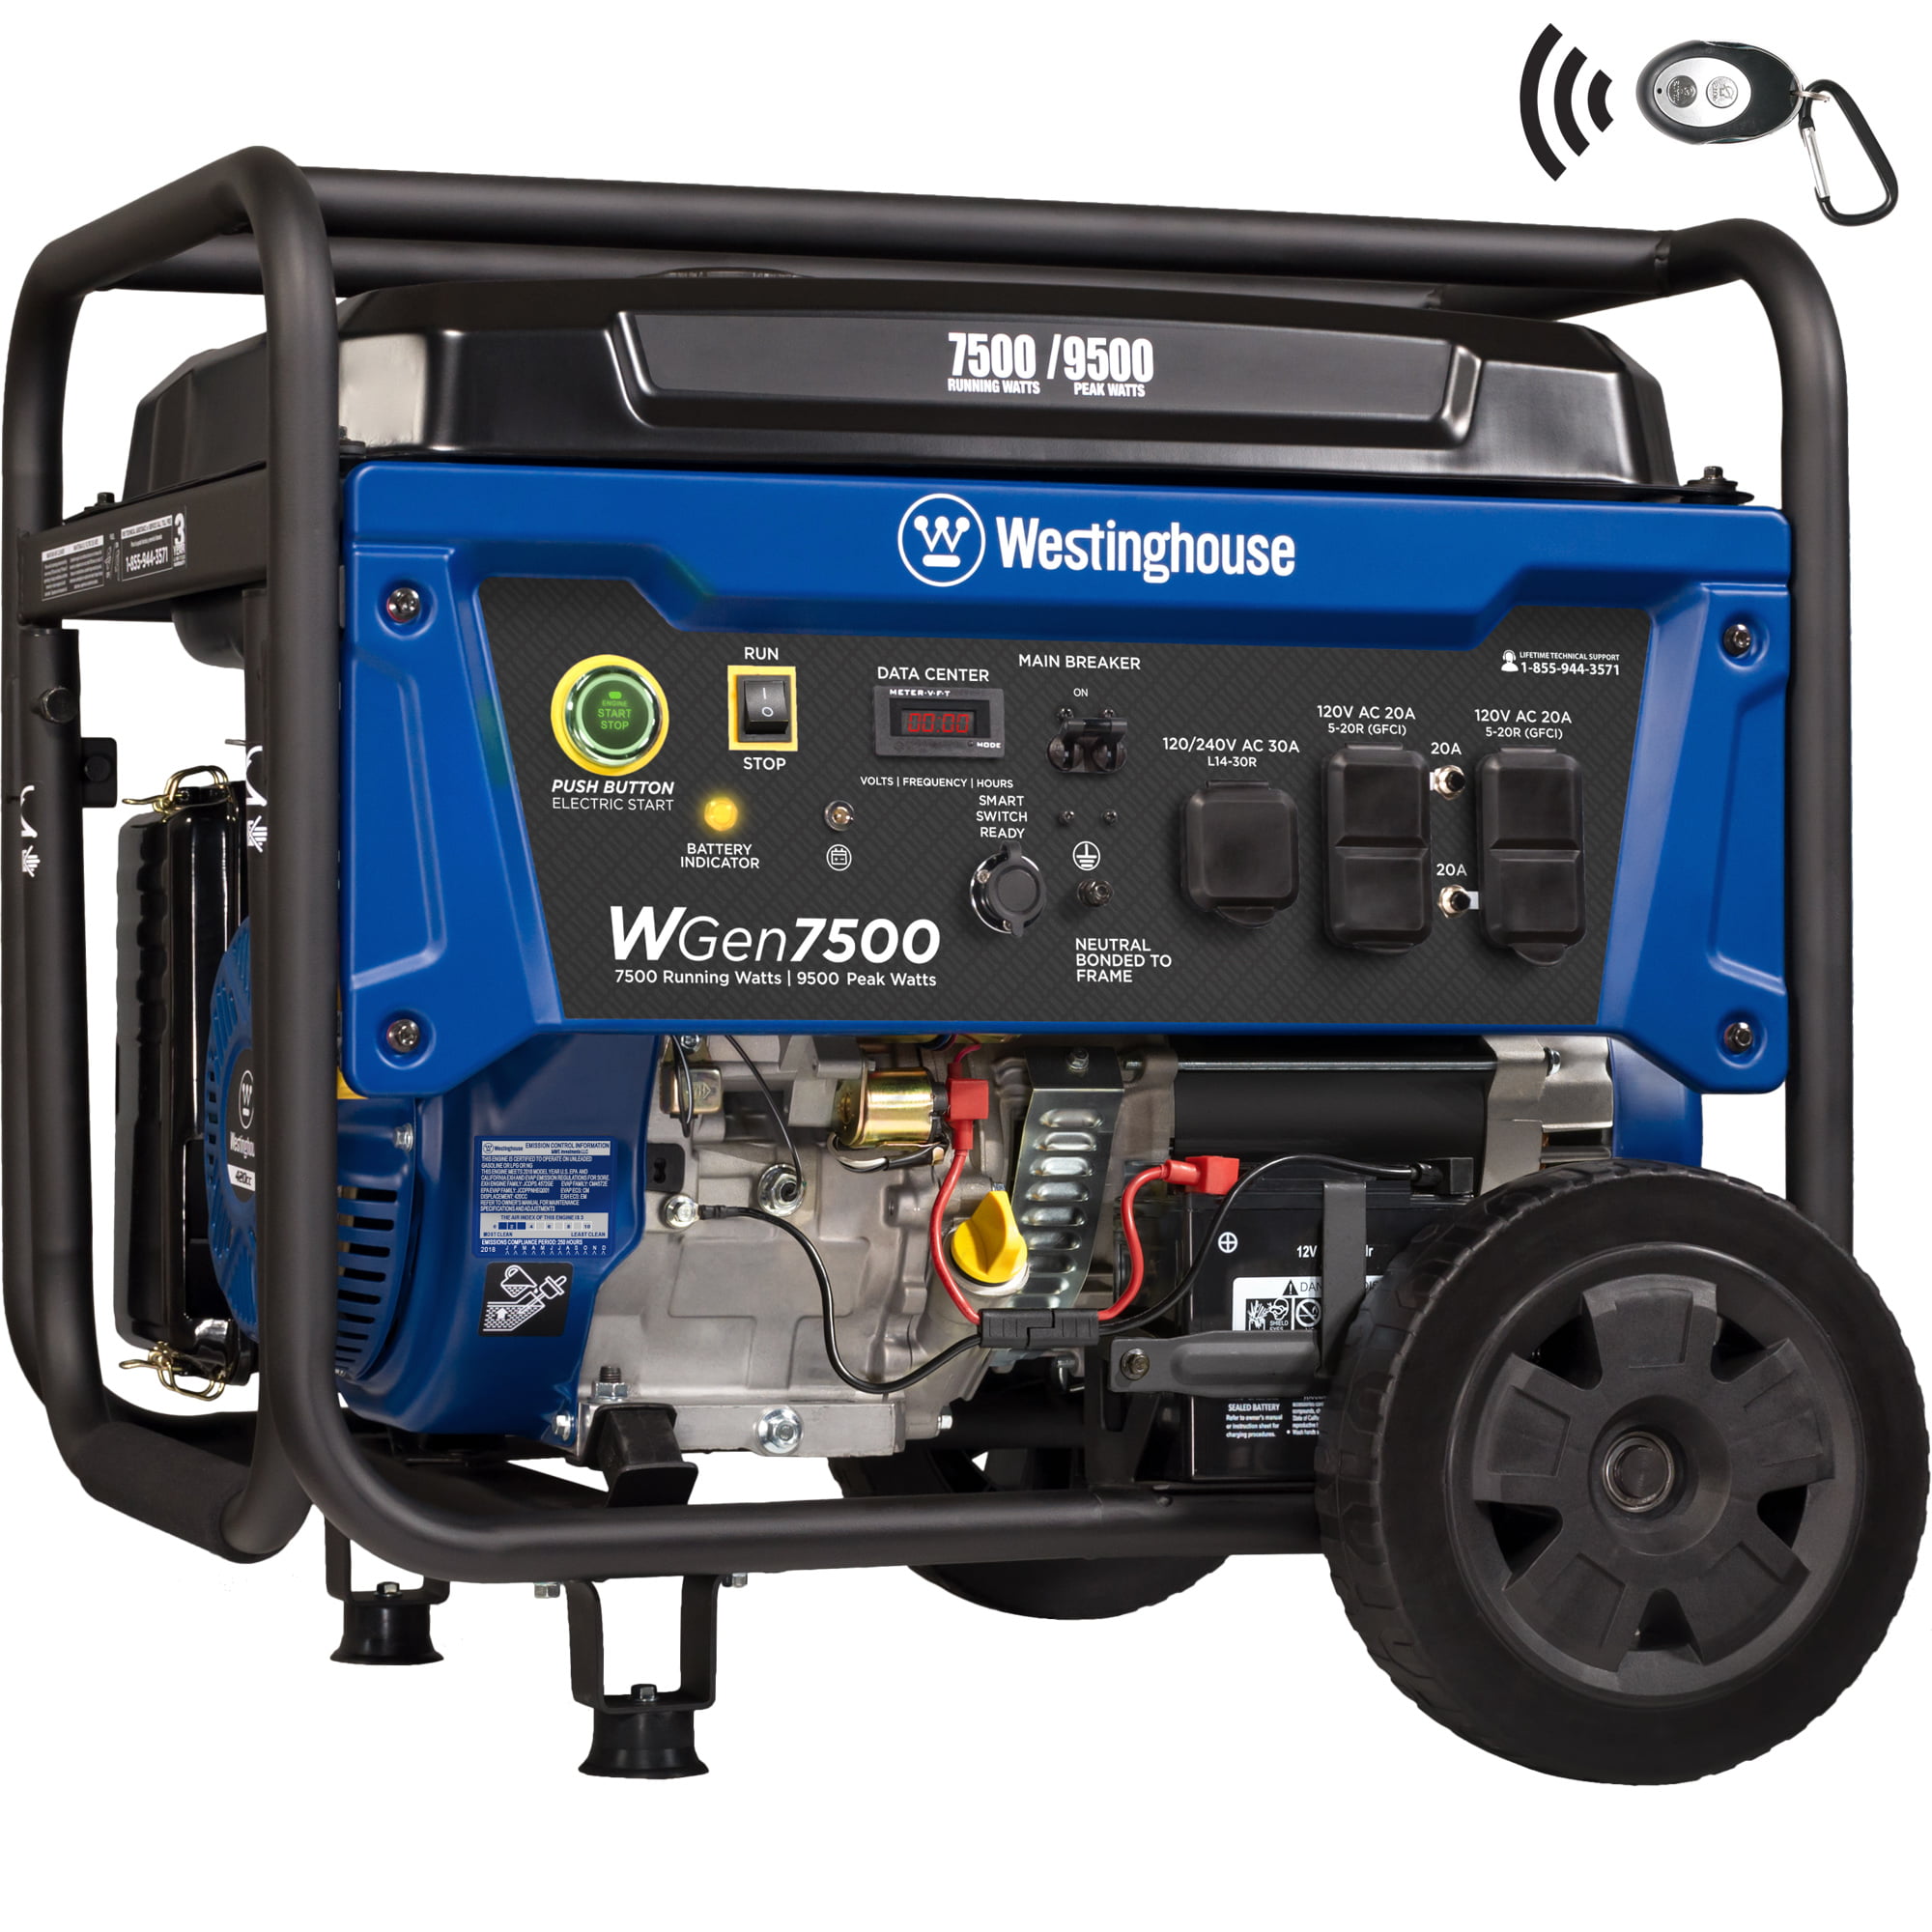 3. Westinghouse Wgen7500 Portable Generator 